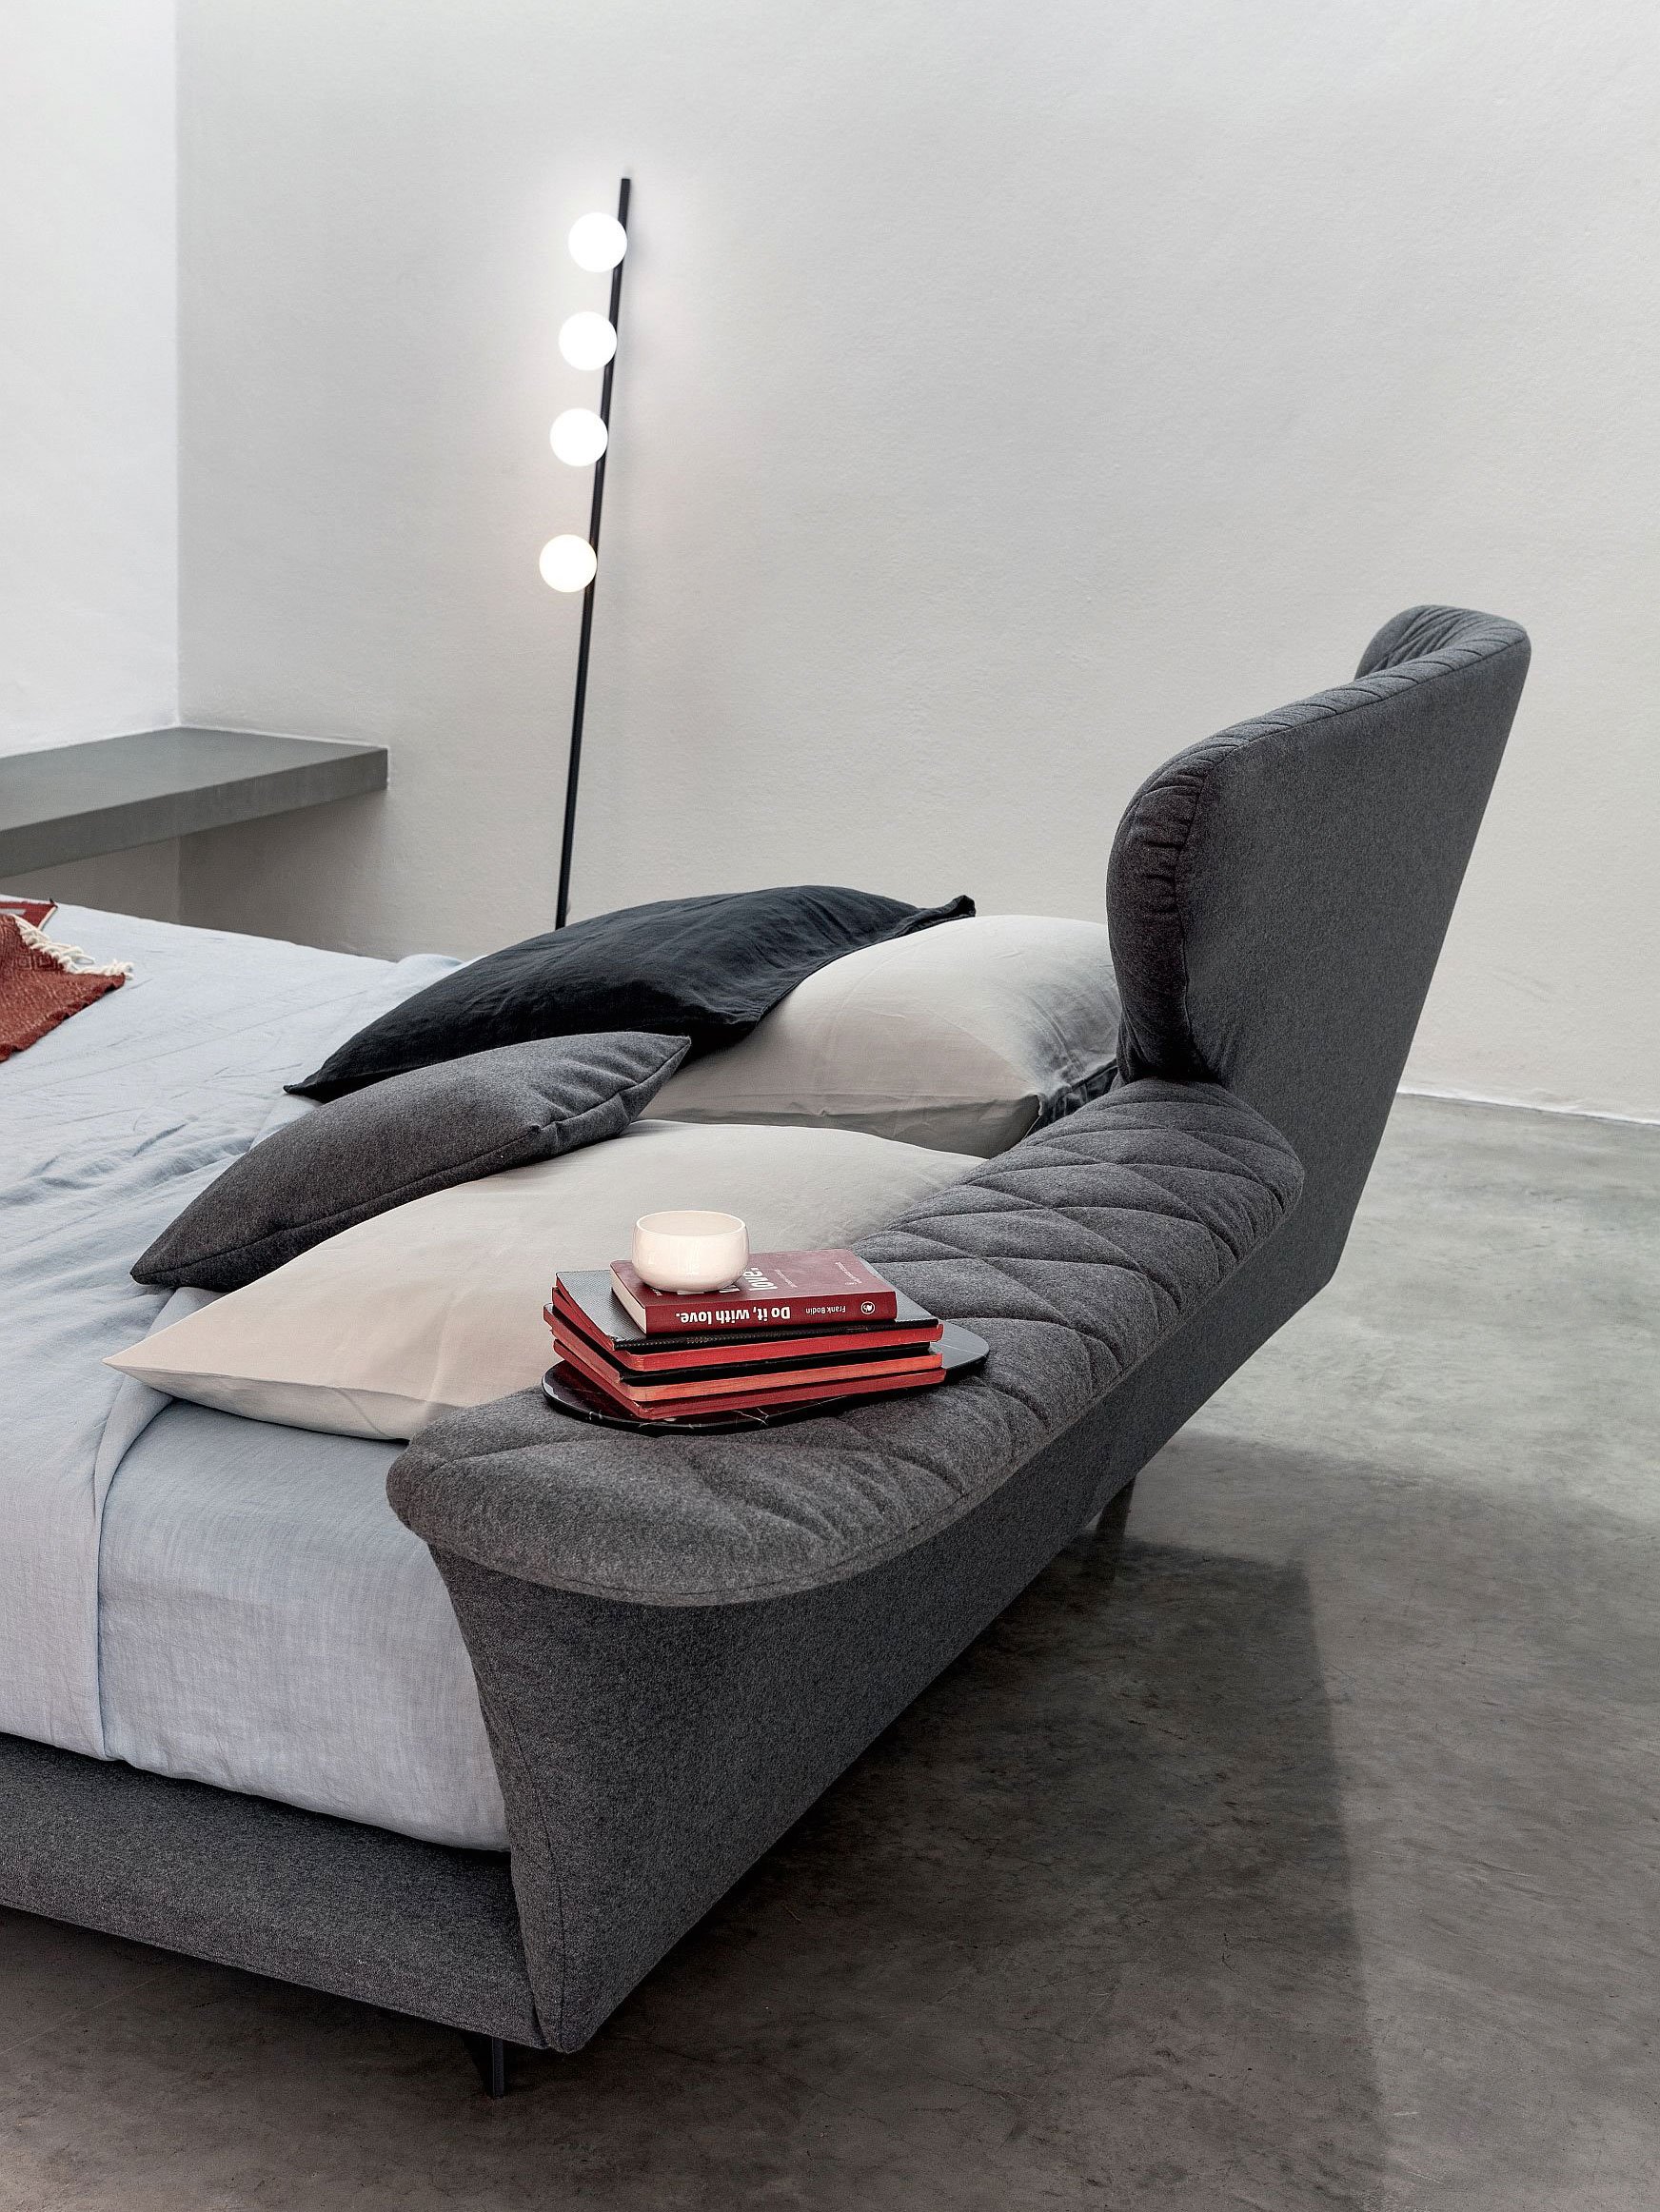 Sofa-Träume: Es muss nicht immer klassisch sein. Ein Bett kann auch mal wie ein Sofa aussehen. Mit geformter Lehne, Bezug aus Stoff oder Leder und praktischer Ablagefläche. bonaldo.com